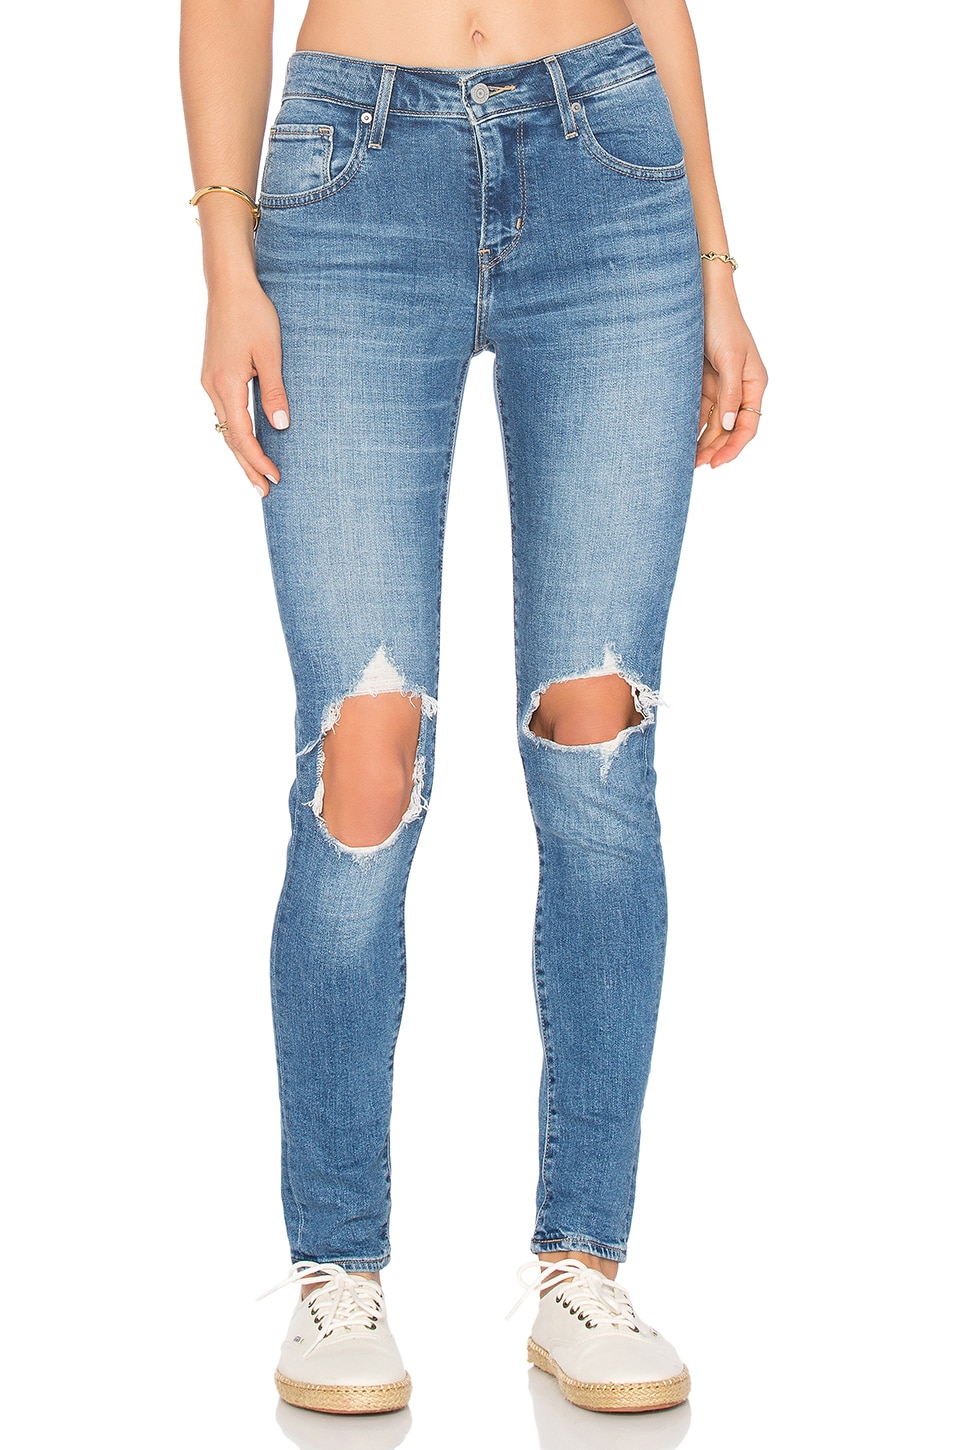 721 high waisted skinny jeans